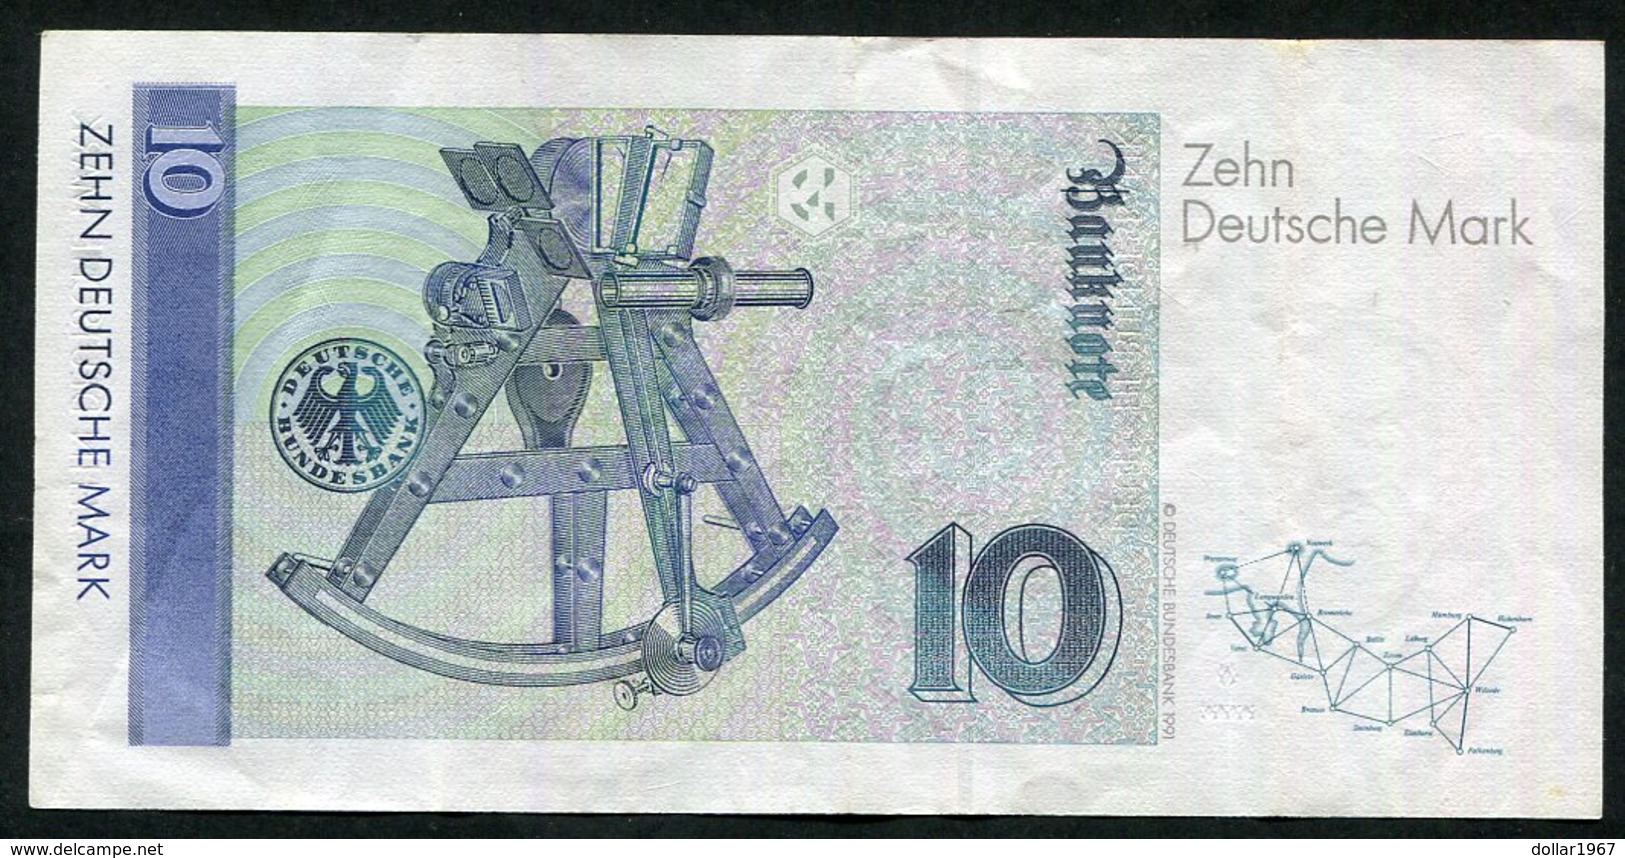 10 Dm / Deutsche Mark / Bundesbanknote 1-10-1993. GK - See The 2 Scans For Condition.(Originalscan ) - 10 DM